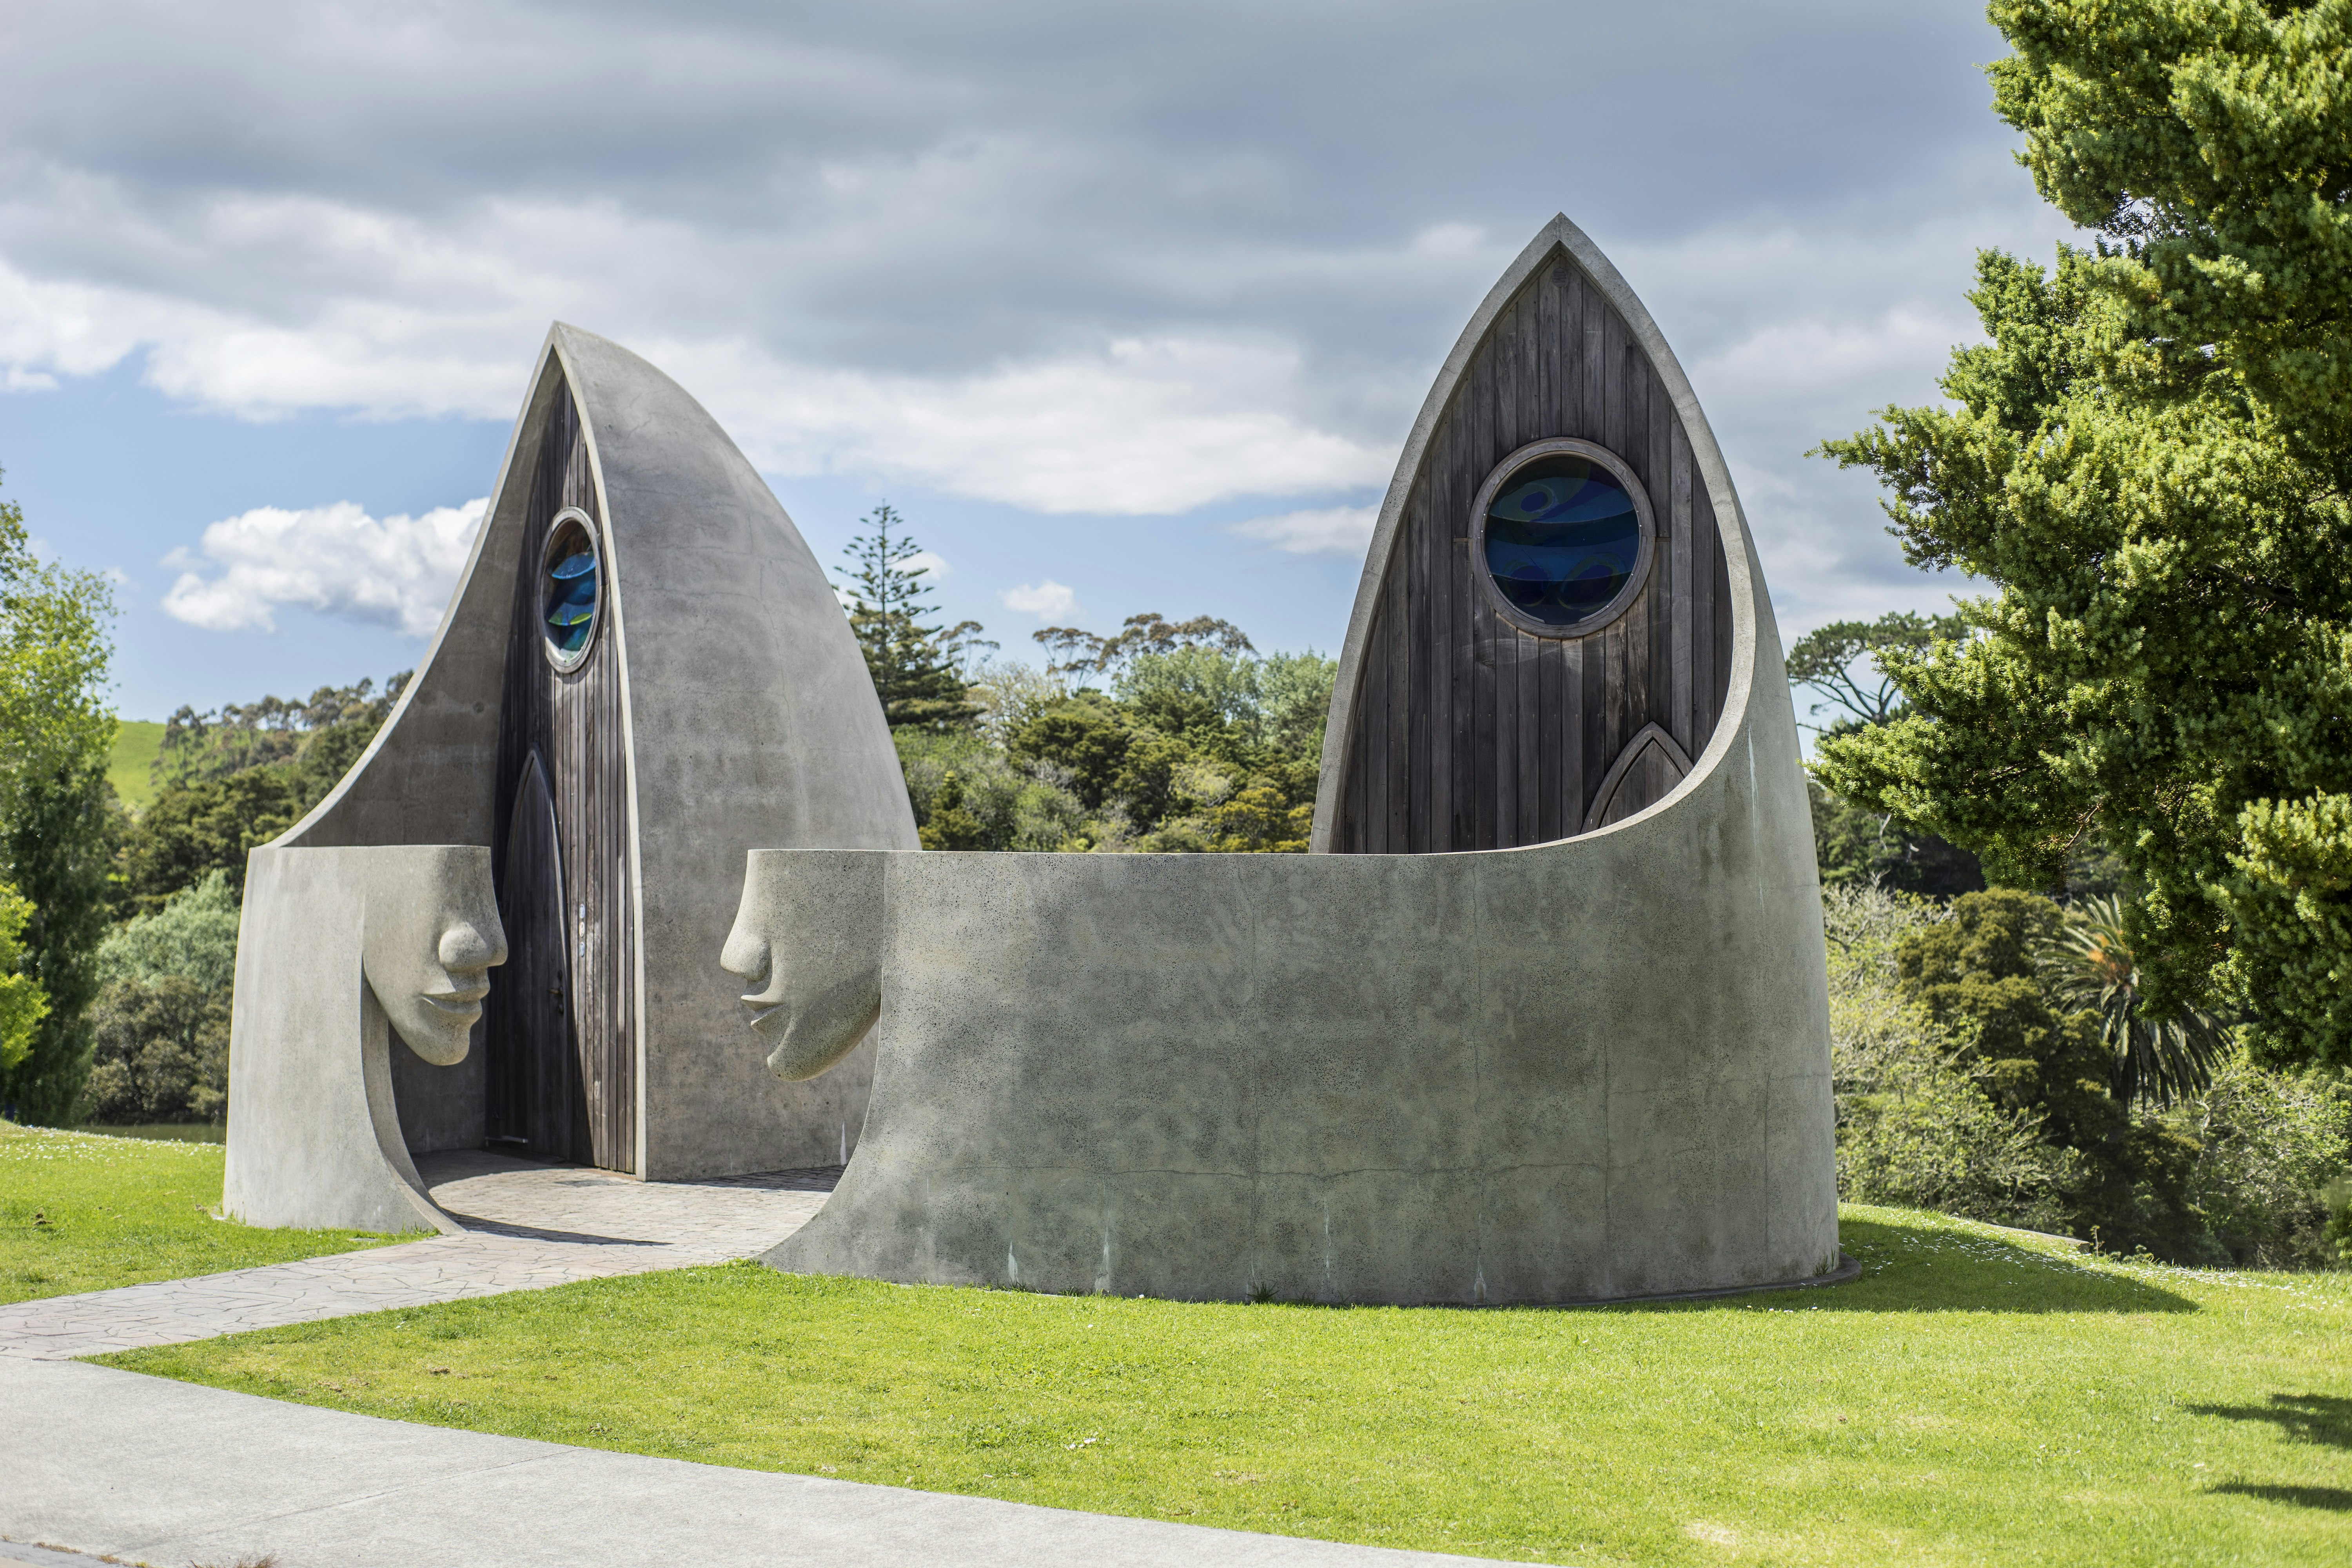 Public toilets in New Zealand